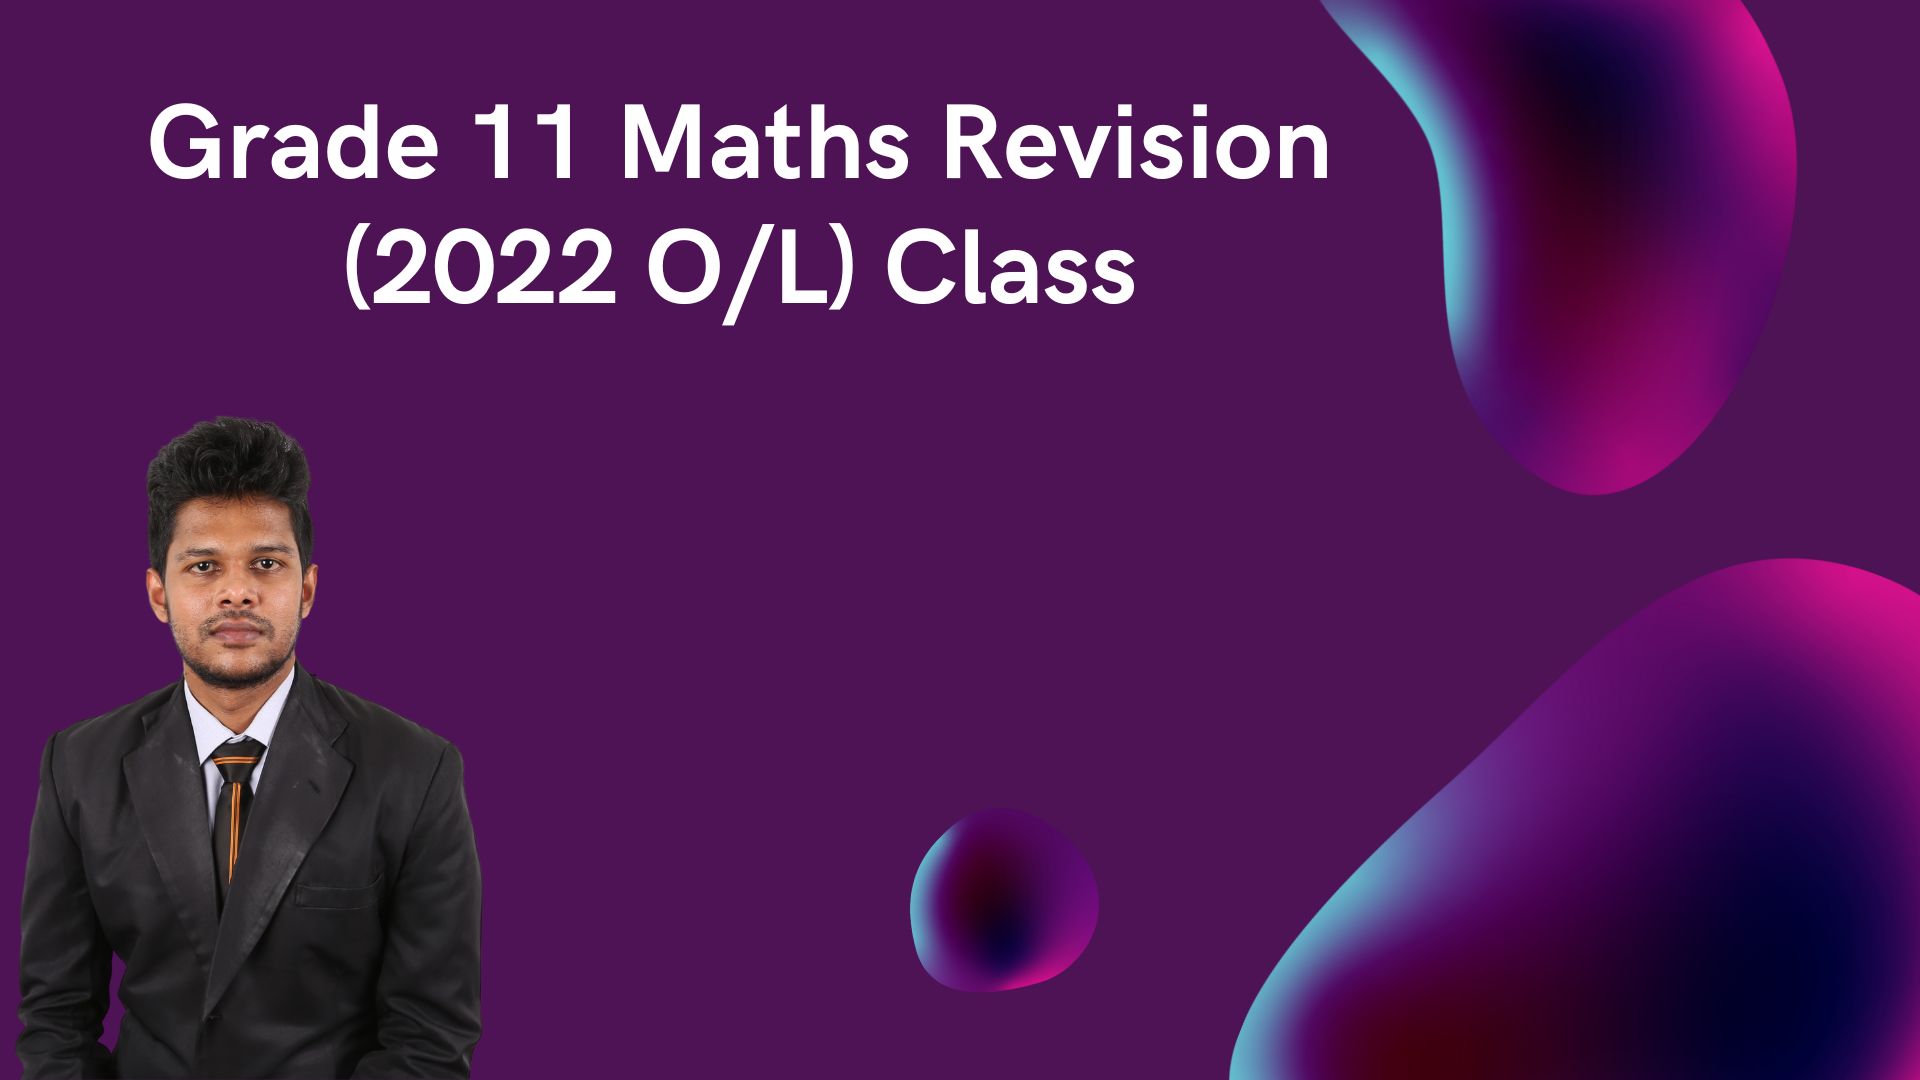 2022 O/L Maths Revision Video Course April 23